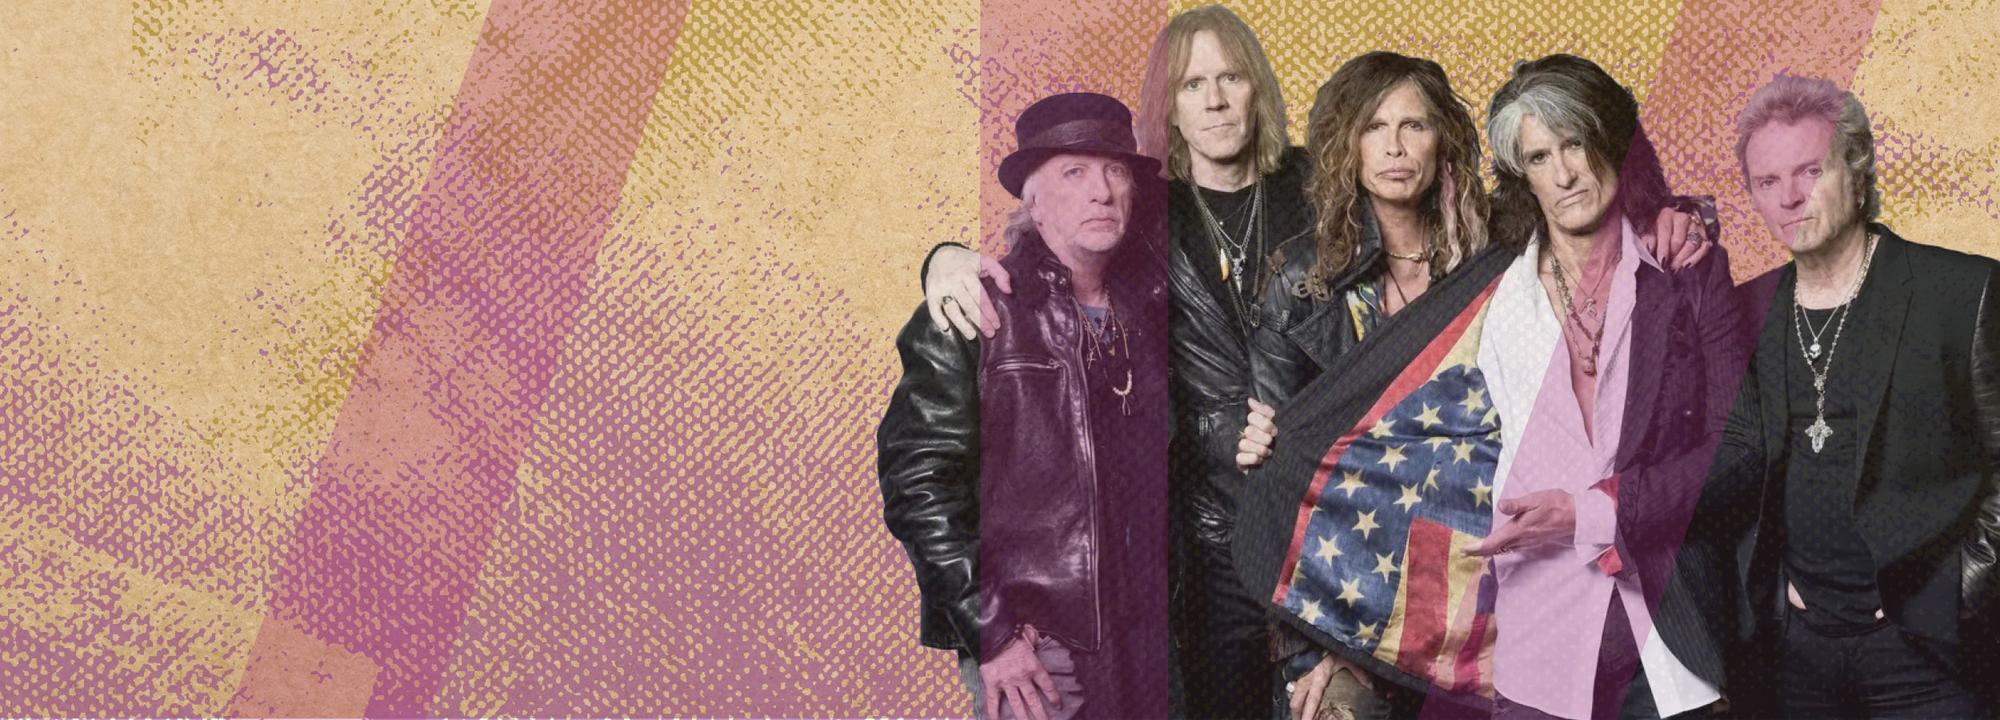 "Jam às Sextas": Homenagem à banda Aerosmith no auditório da Fábrica das Palavras